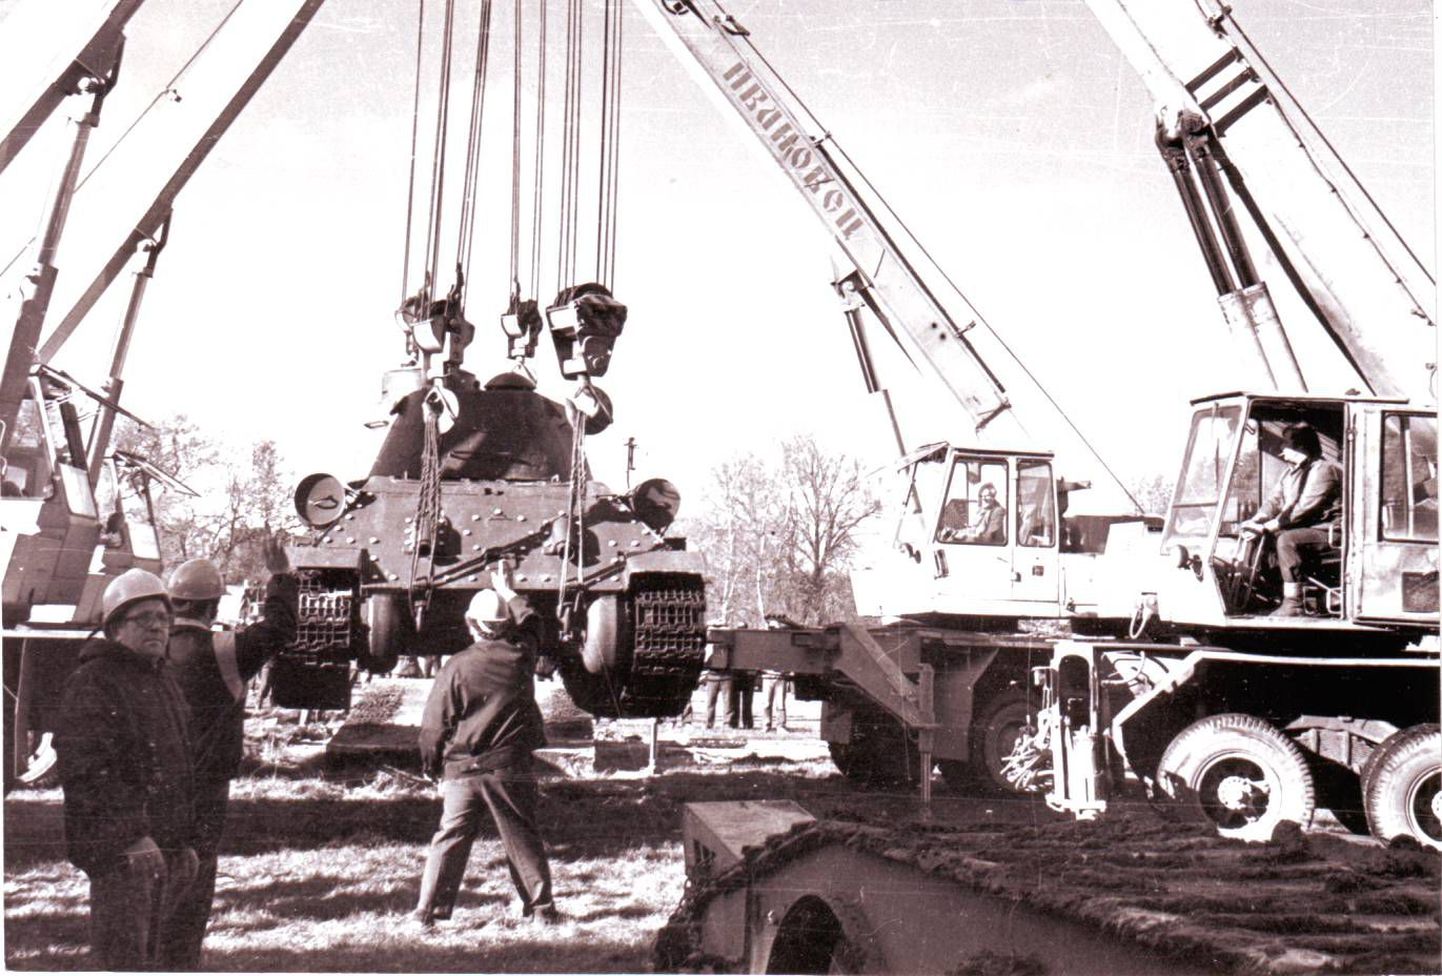 Sindi-Lodja teeristis seisnud tank võeti maha 1990. aastal. Arhiivifoto.